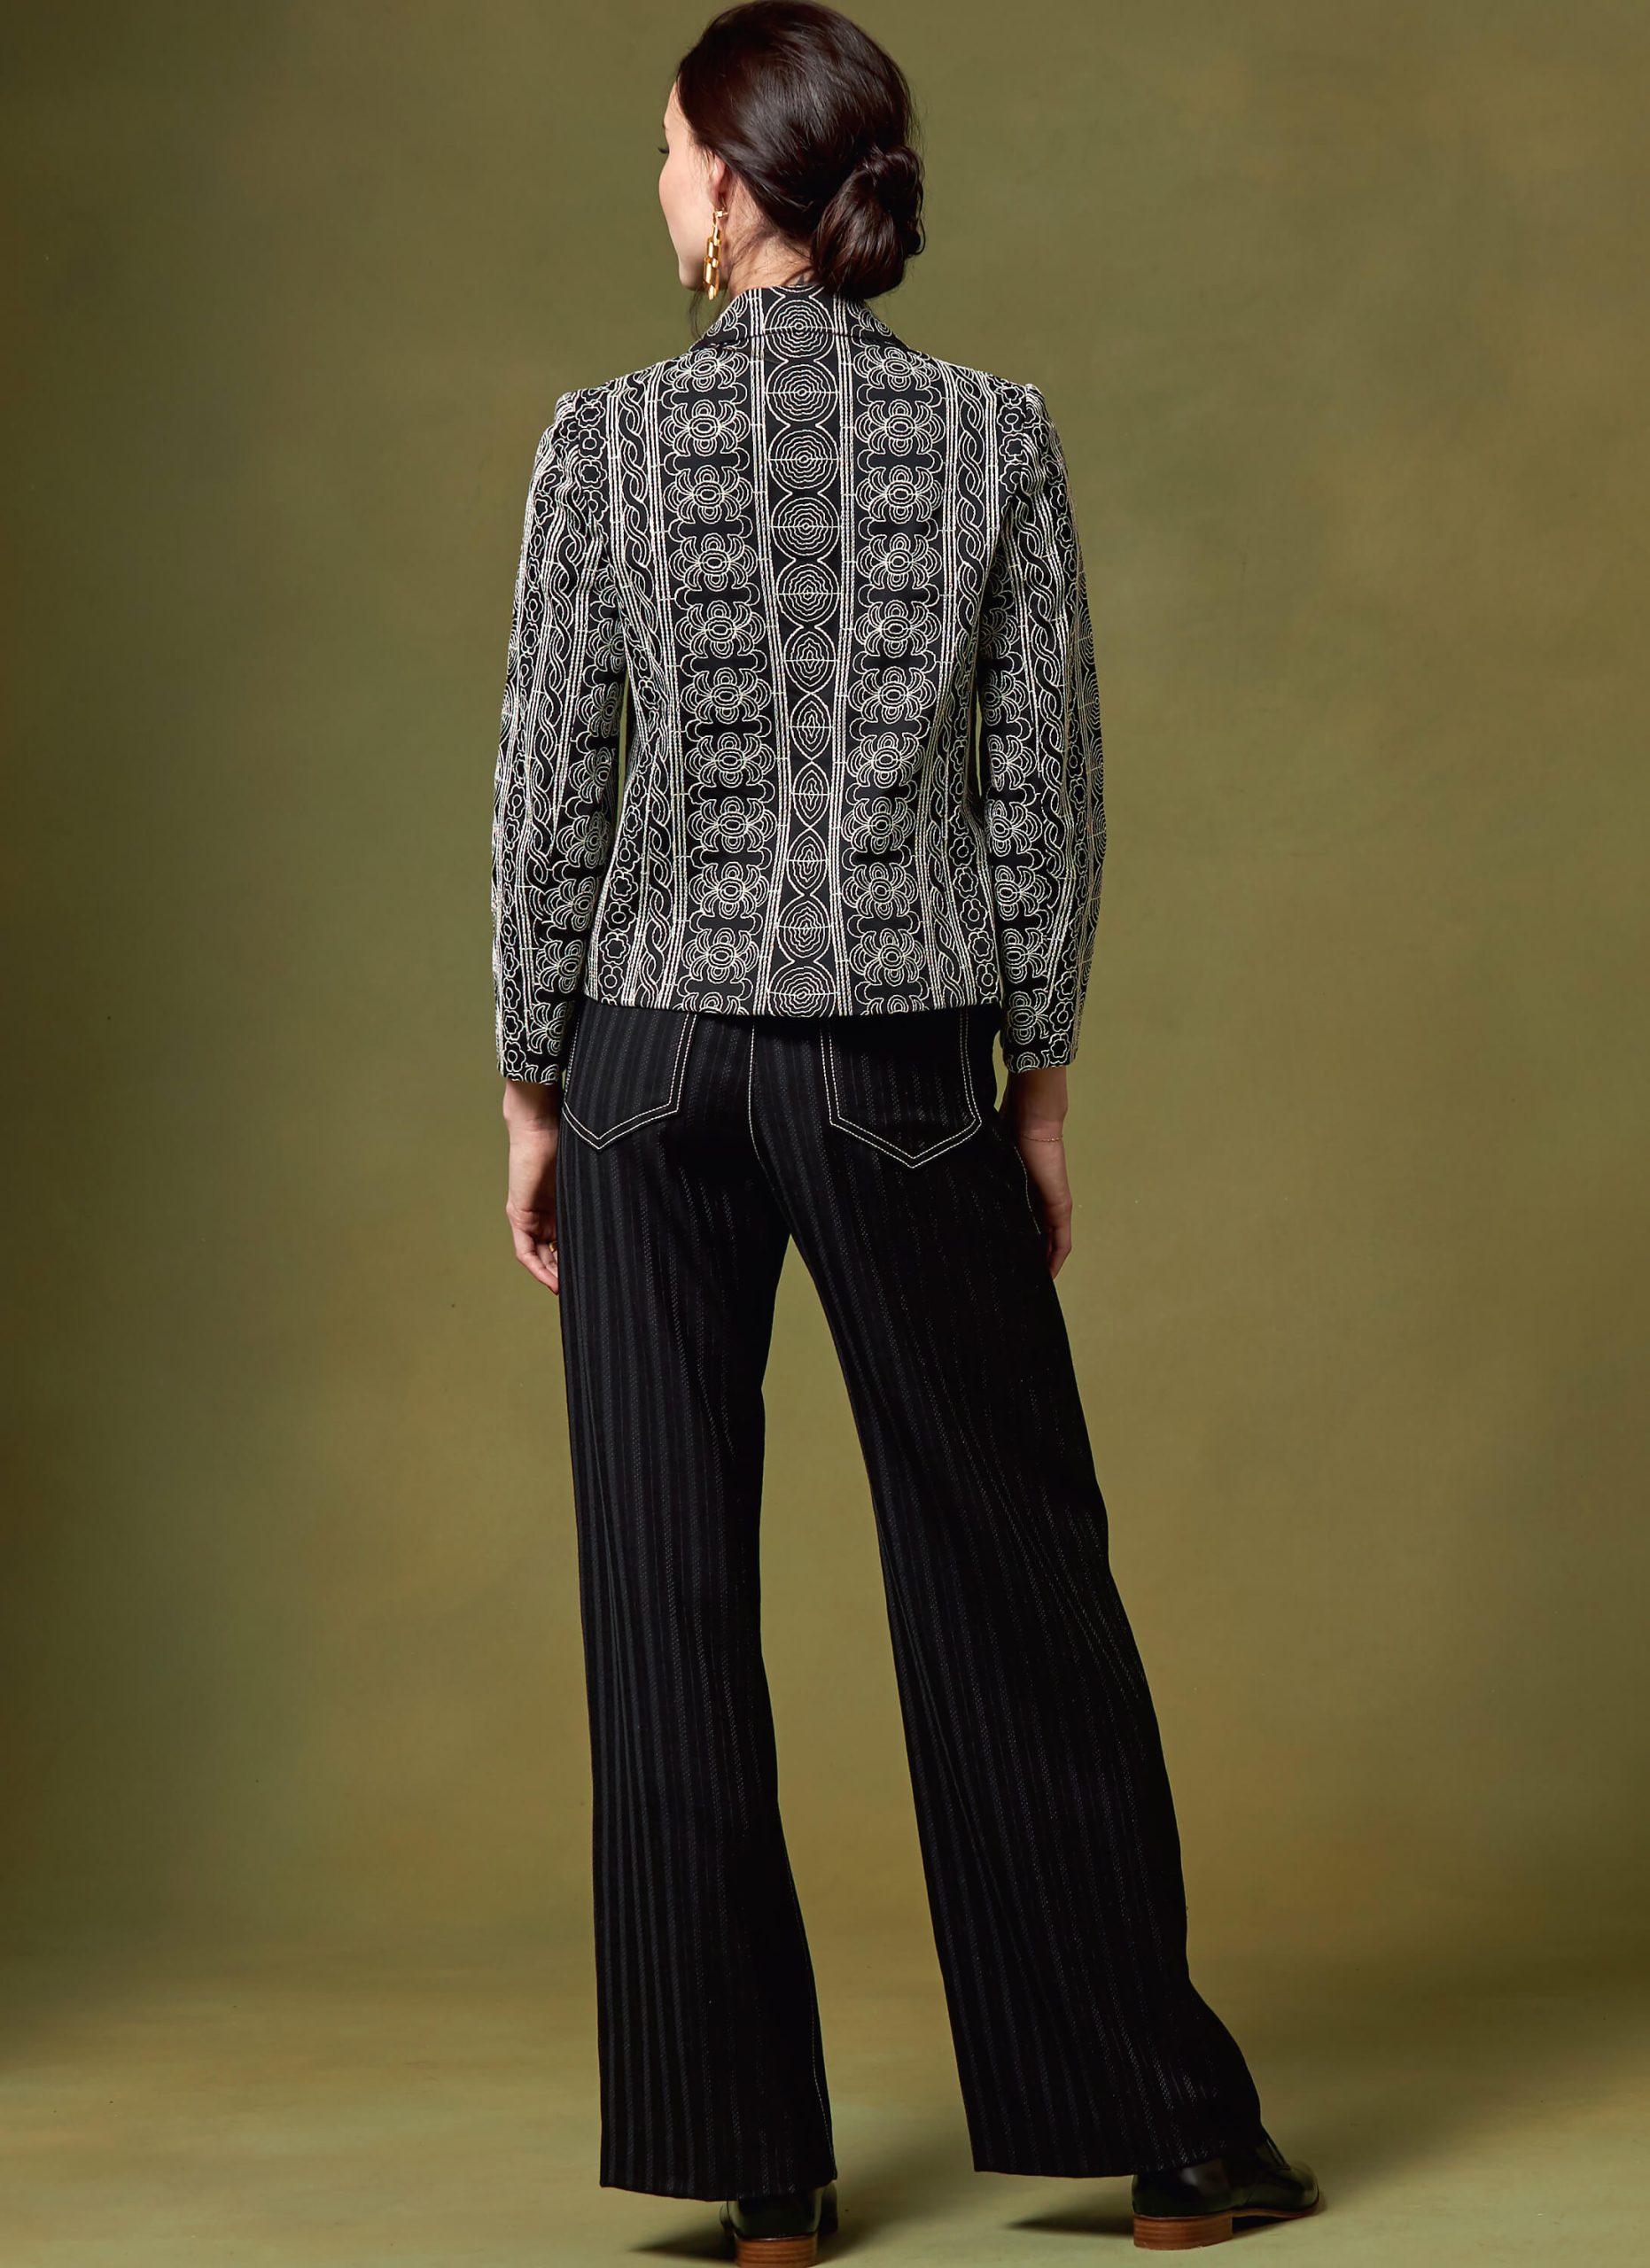 Vogue Patterns V1644 Kathryn Brenne Misses' Jacket and Trousers